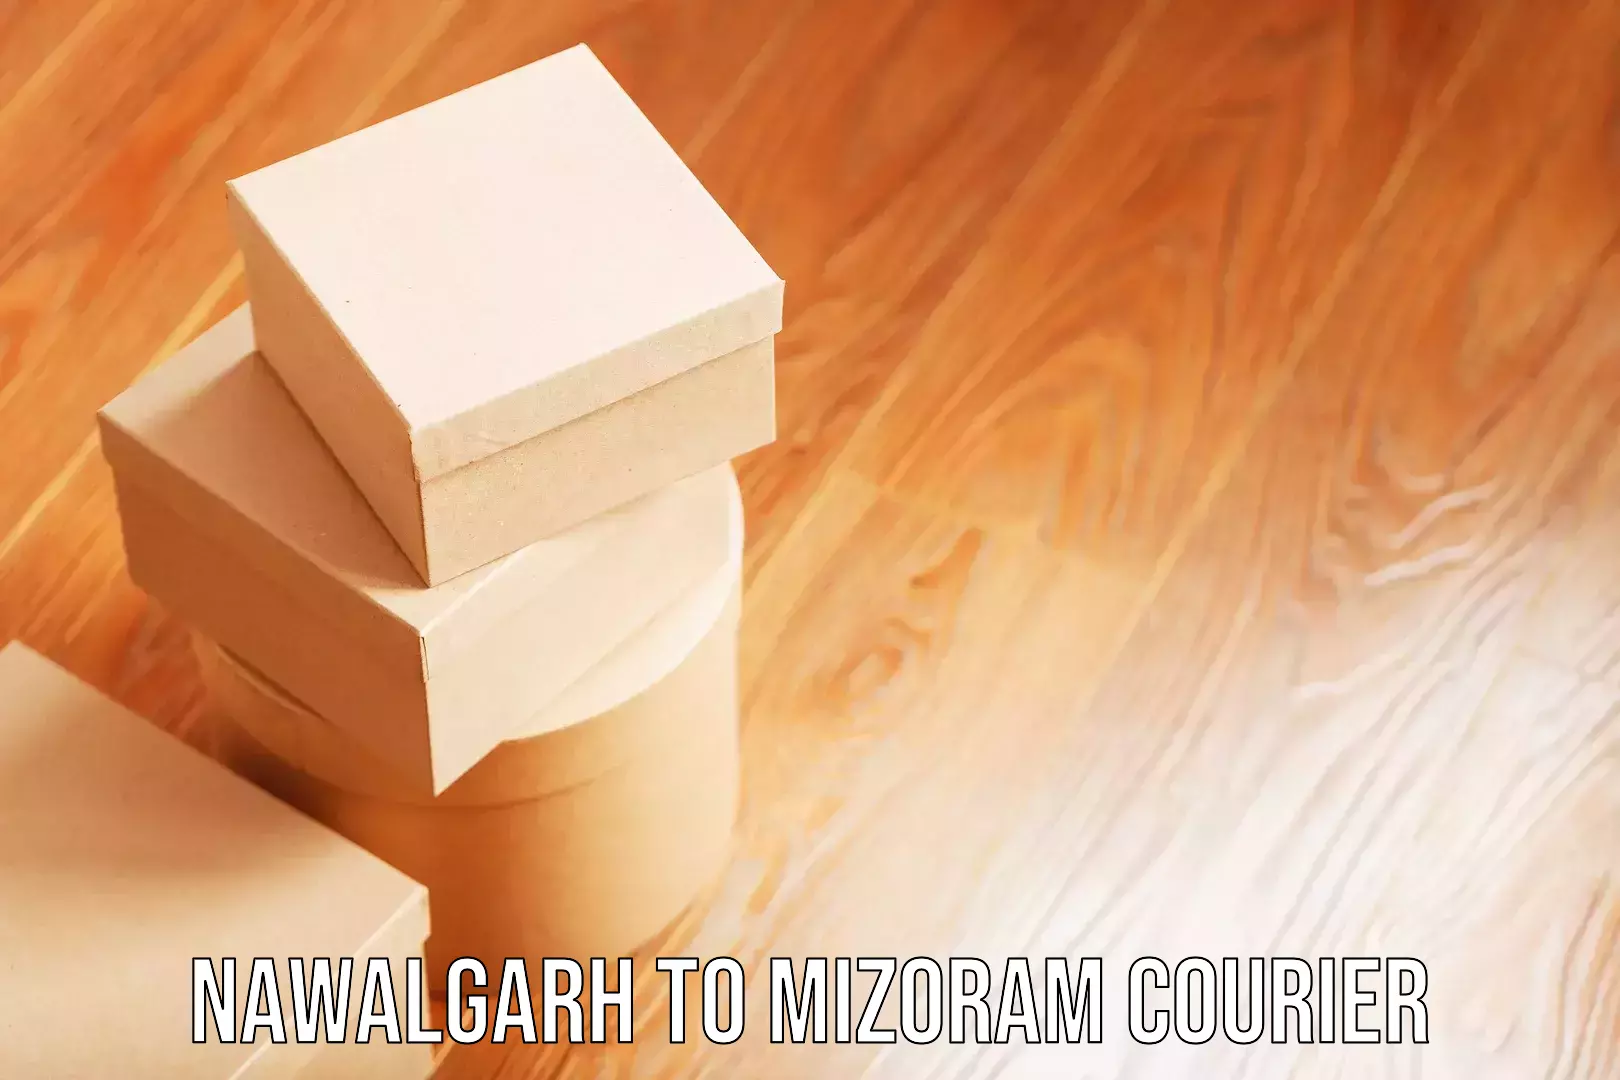 Luggage delivery network Nawalgarh to Mizoram